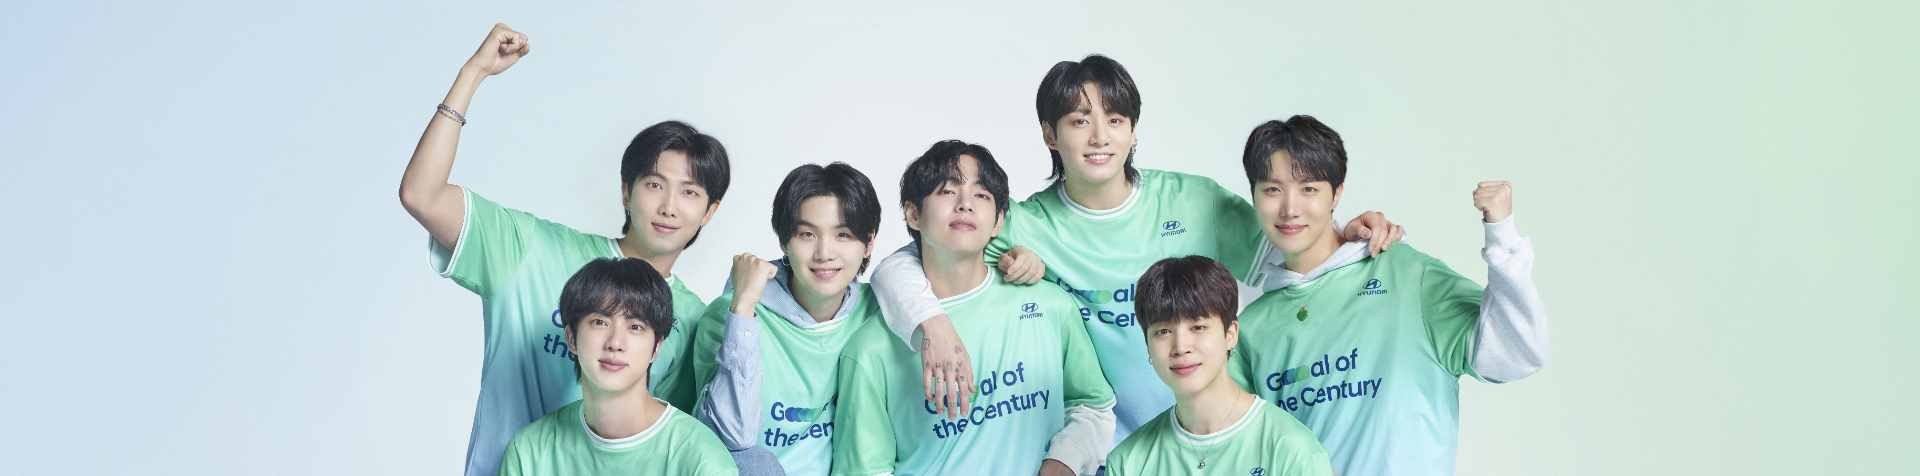 Všetkých 7 členov kapely BTS stojacich v línii smerujúcej dopredu. Každý člen má zelený a sivý dres Team Century s logom Hyundai a tmavomodrým logom Goal of the Century na prednej strane.